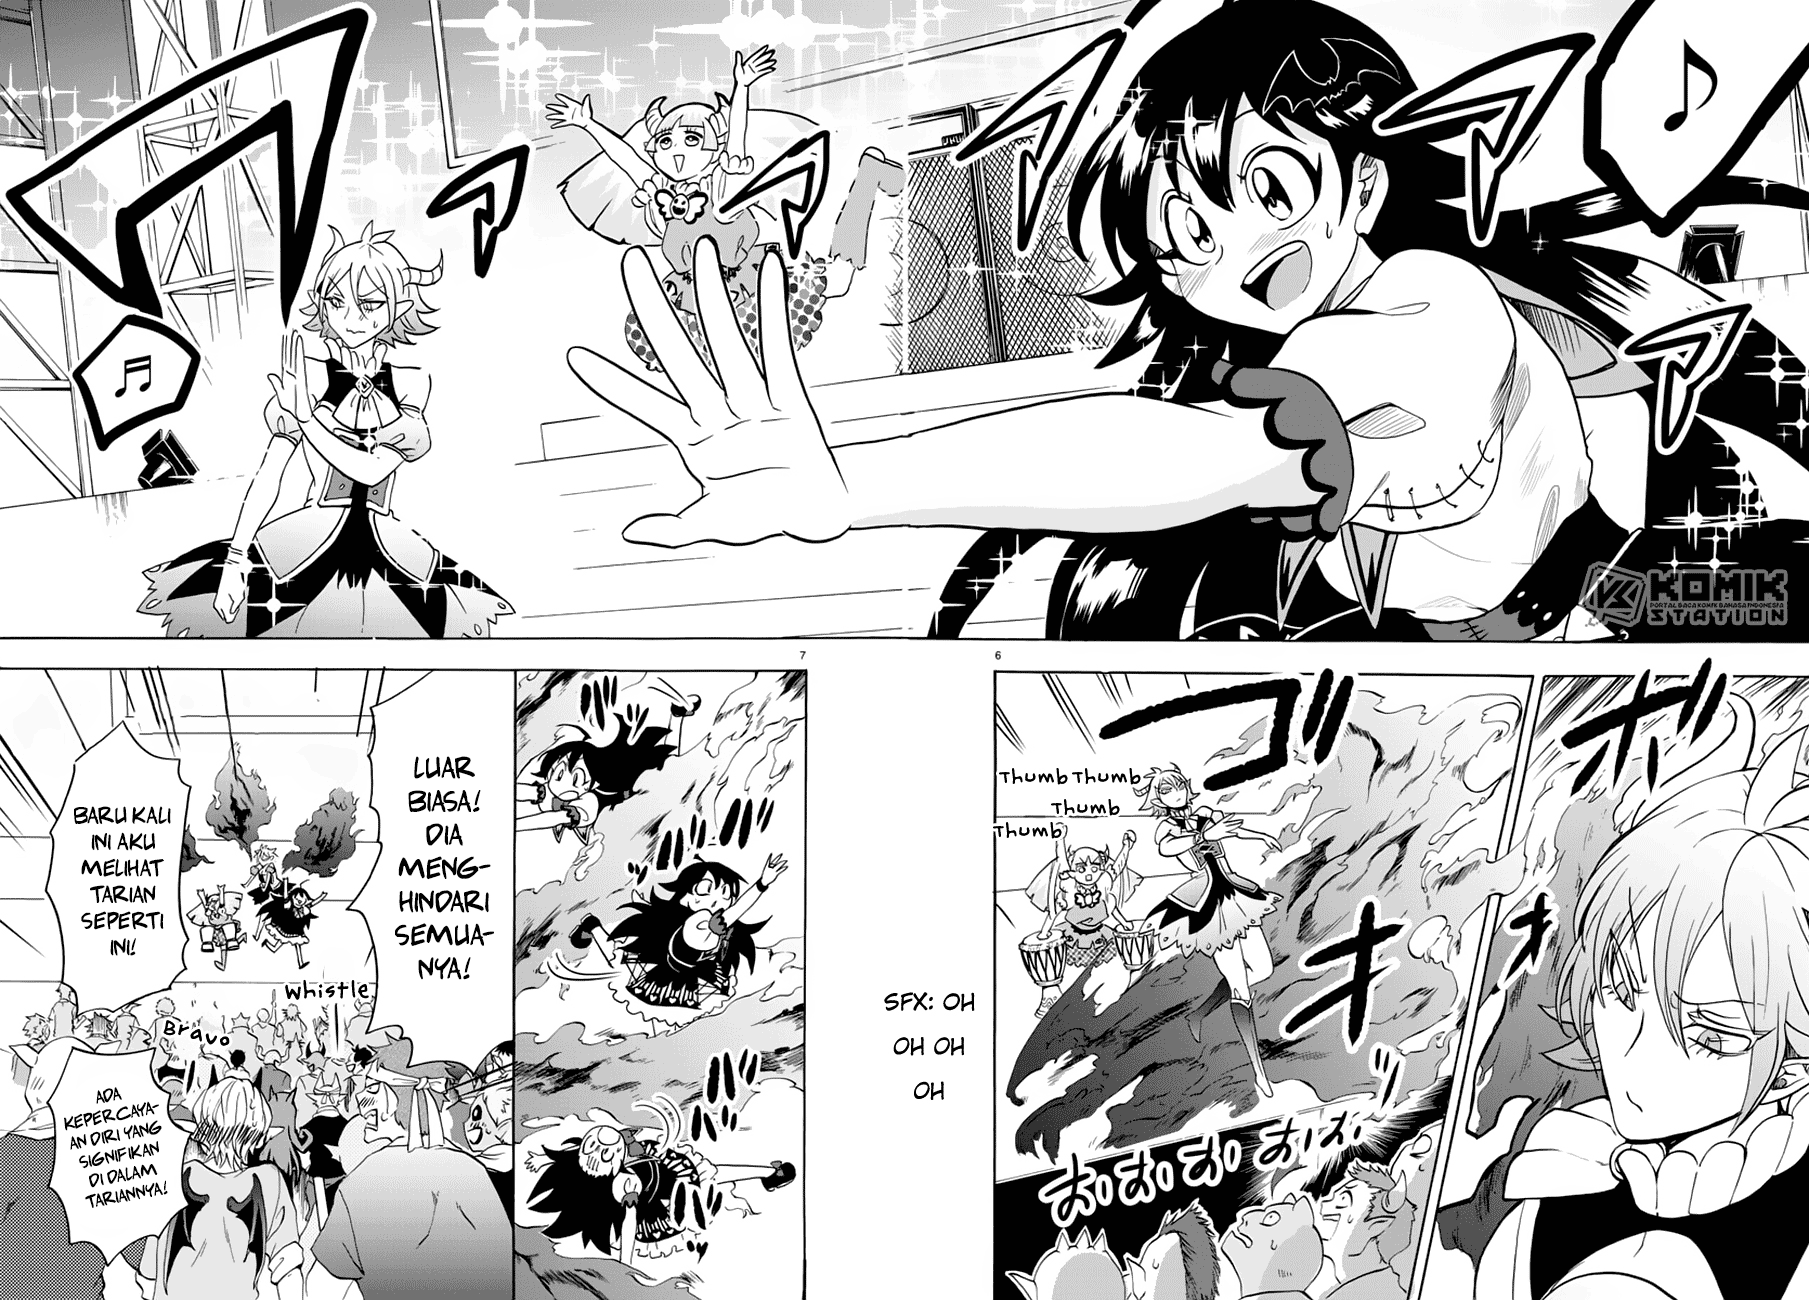 Mairimashita! Iruma-kun Chapter 43